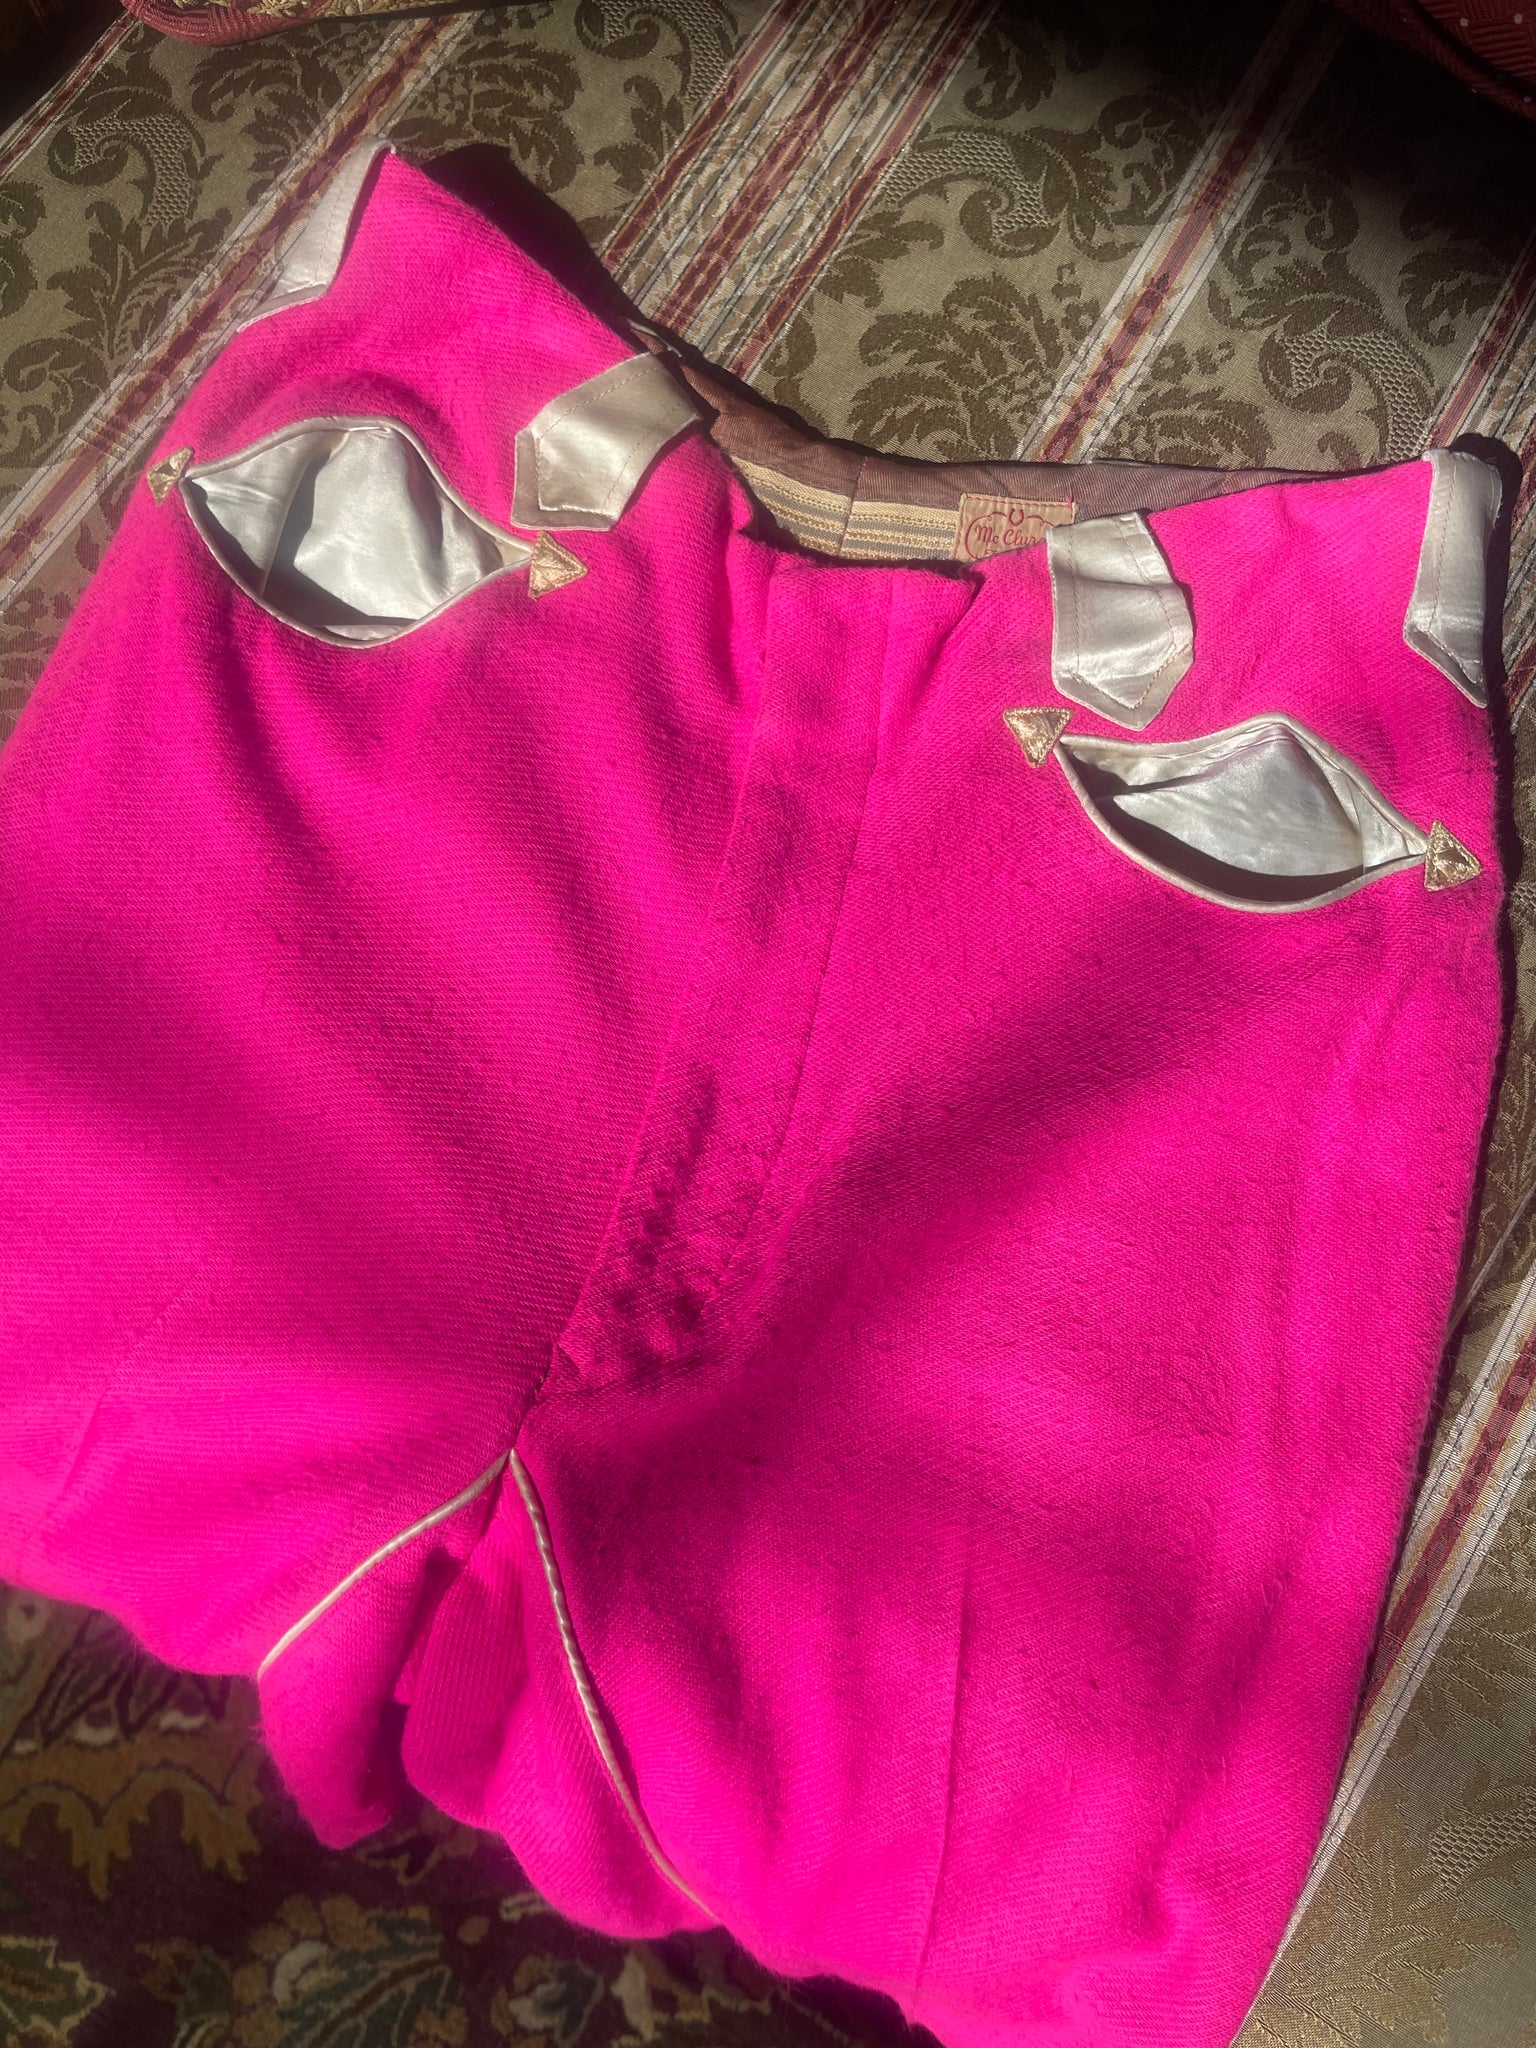 1950s Shocking Pink Panhandle Western Pants